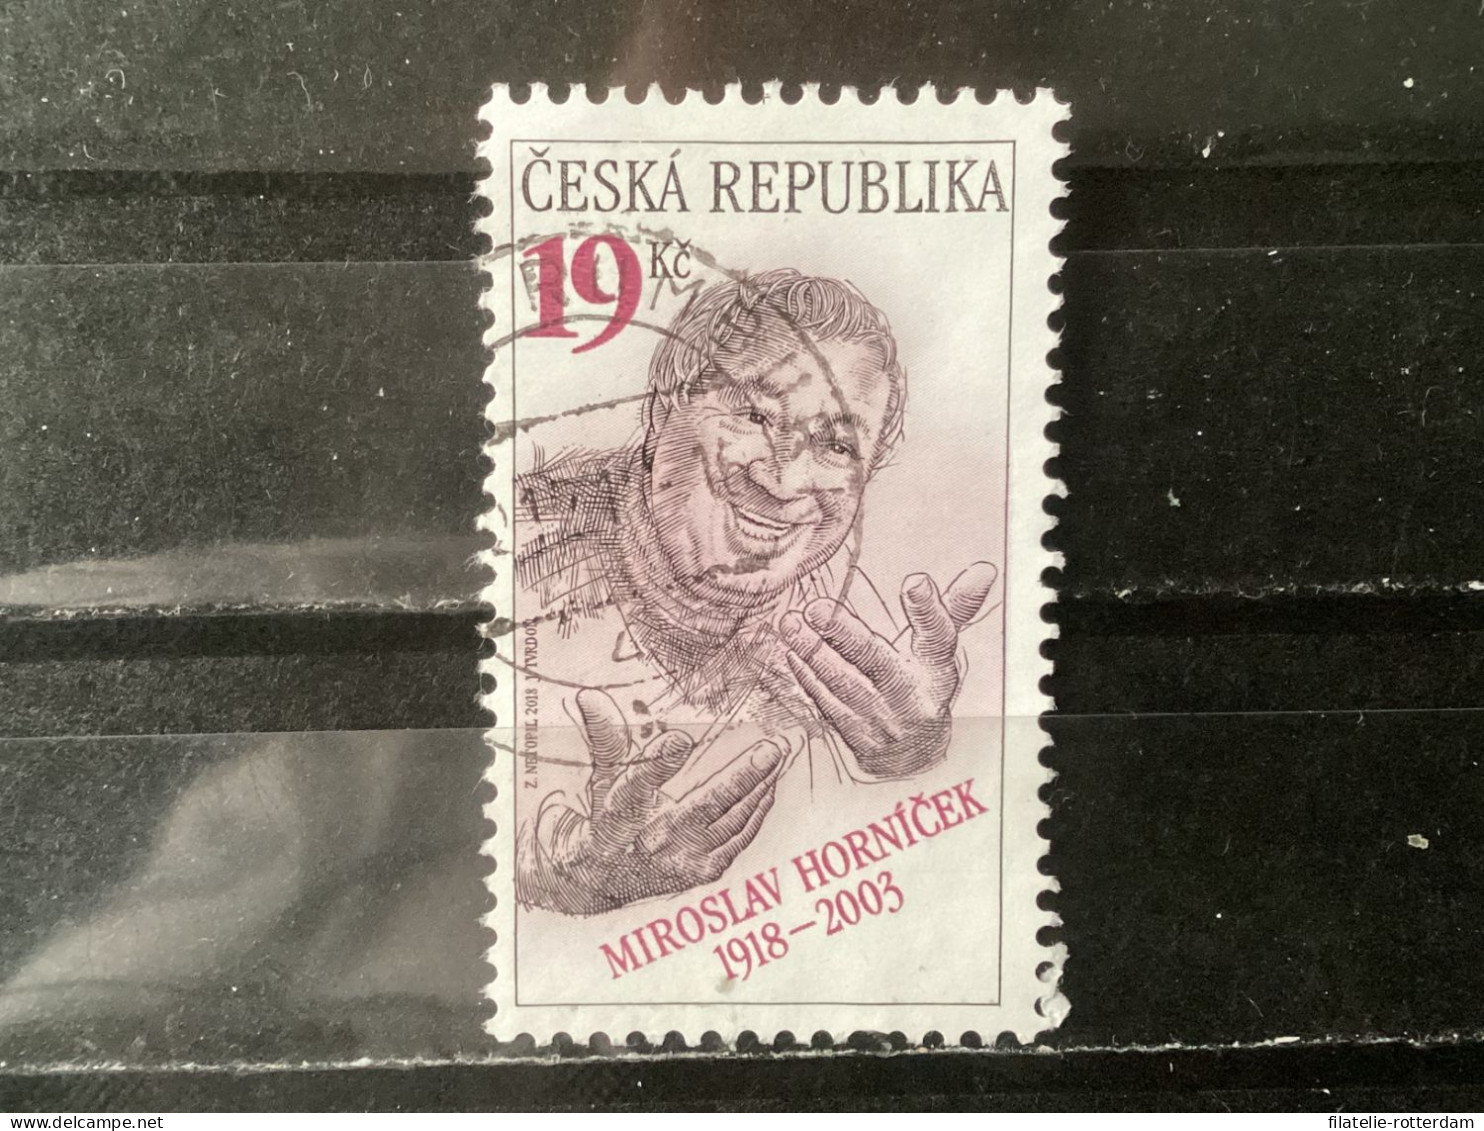 Czech Republic / Tsjechië - Miroslav Hornisek (19) 2018 - Used Stamps